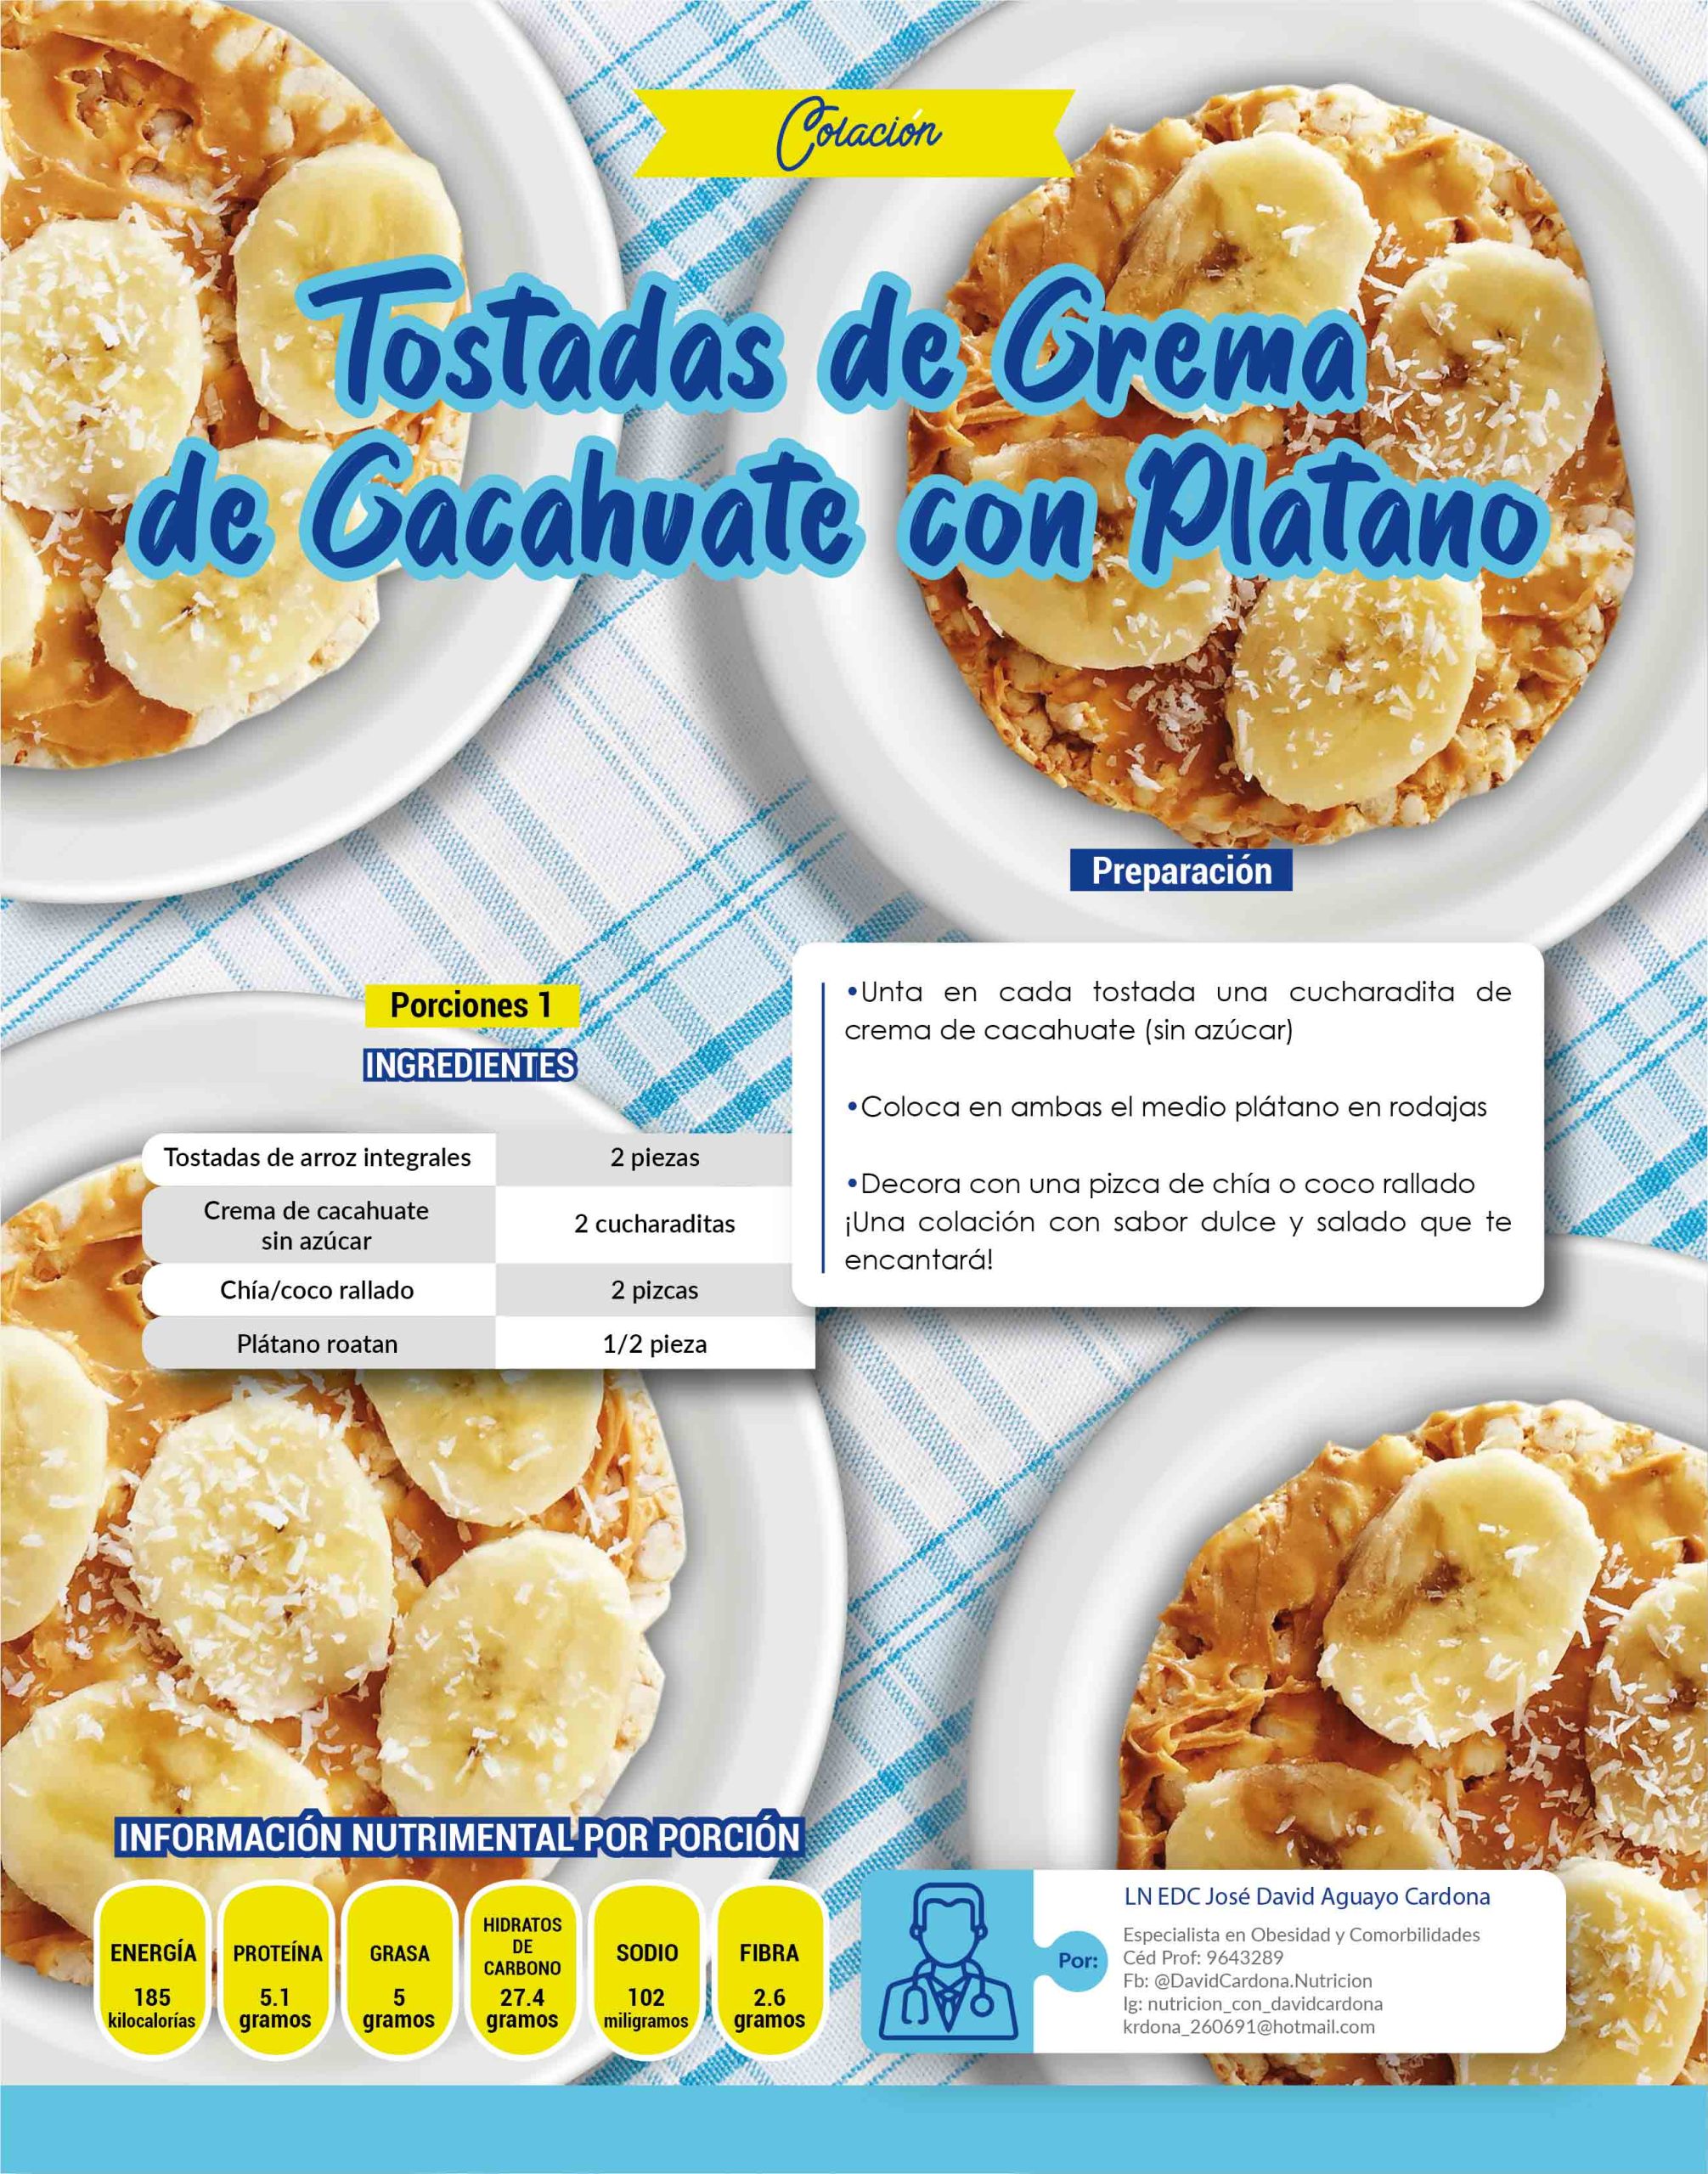 Tostadas de crema de cacahuate con plátano - Revista Diabetes Hoy